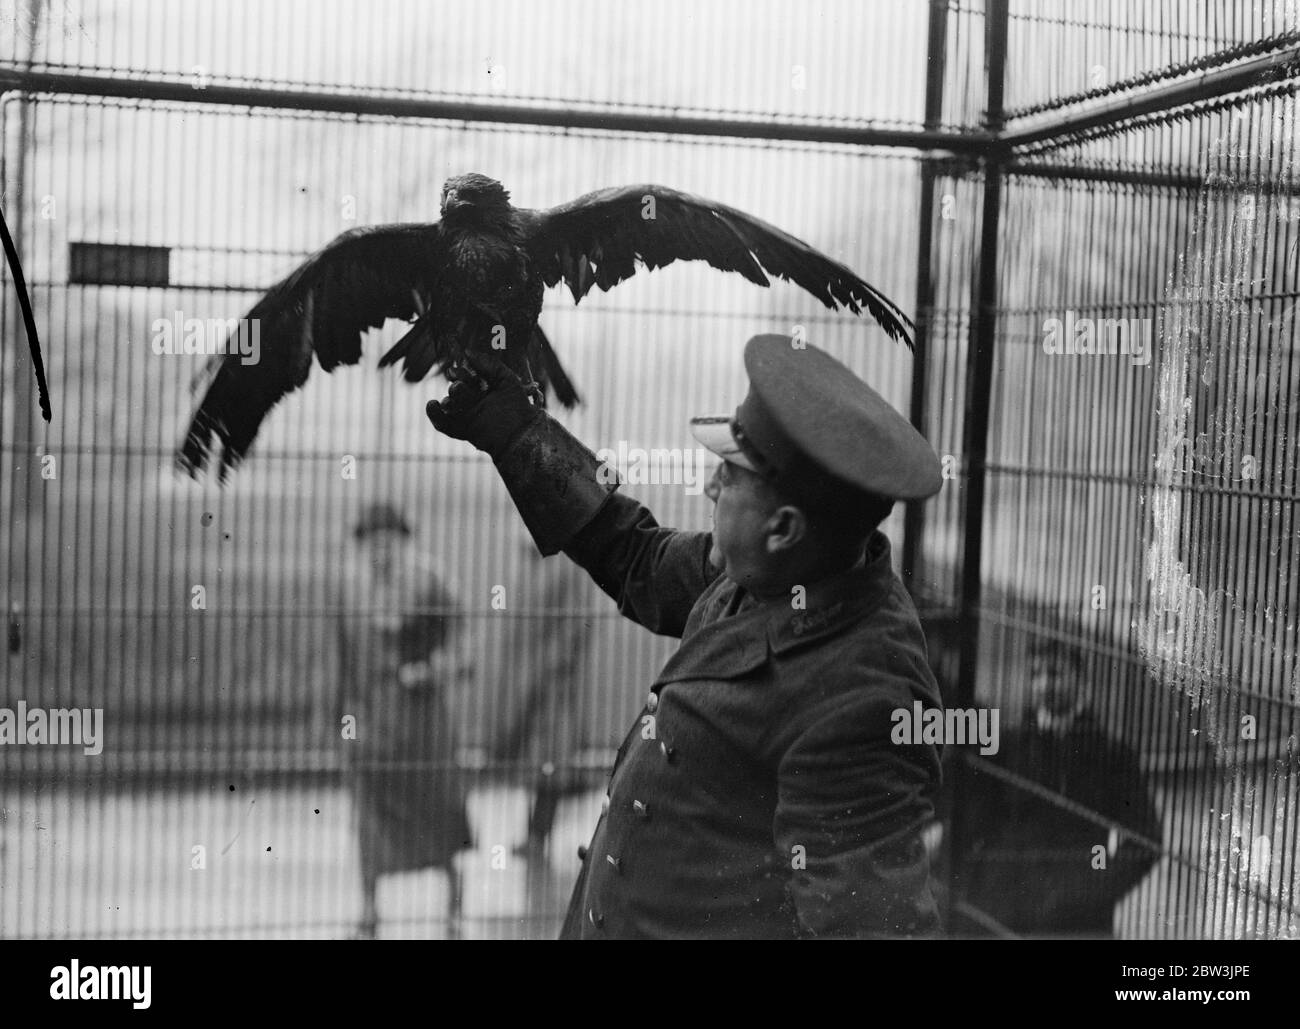 Pedro ist nach einer Woche Freiheit wieder in seinem Tiergehege. Pedro, der Truant, ist zurück in seinem Käfig im Londoner Zoo. Pedro ist ein gestürzter Adler, der den Zoo Behörden schlaflose Nächte für eine Woche gab, nachdem er es geschafft hatte zu entkommen. Er nahm Quartier in den Bäumen des Zoos und widersetzte sich jeder Schmeichelkeit, auf die ein hungriger Adler zu erwarten wäre, zu reagieren, Bis er bemerkte, ein Holz-Schweinchen, das in die Krananlage getaucht hatte. Henne pedro verlor seine Selbstkontrolle und flog zum Kill nur sicher in einem Keeper ' s net gefangen werden. Foto zeigt, Pedro sicher zurück in seinem Käfig im London Zoo. Judgin Stockfoto